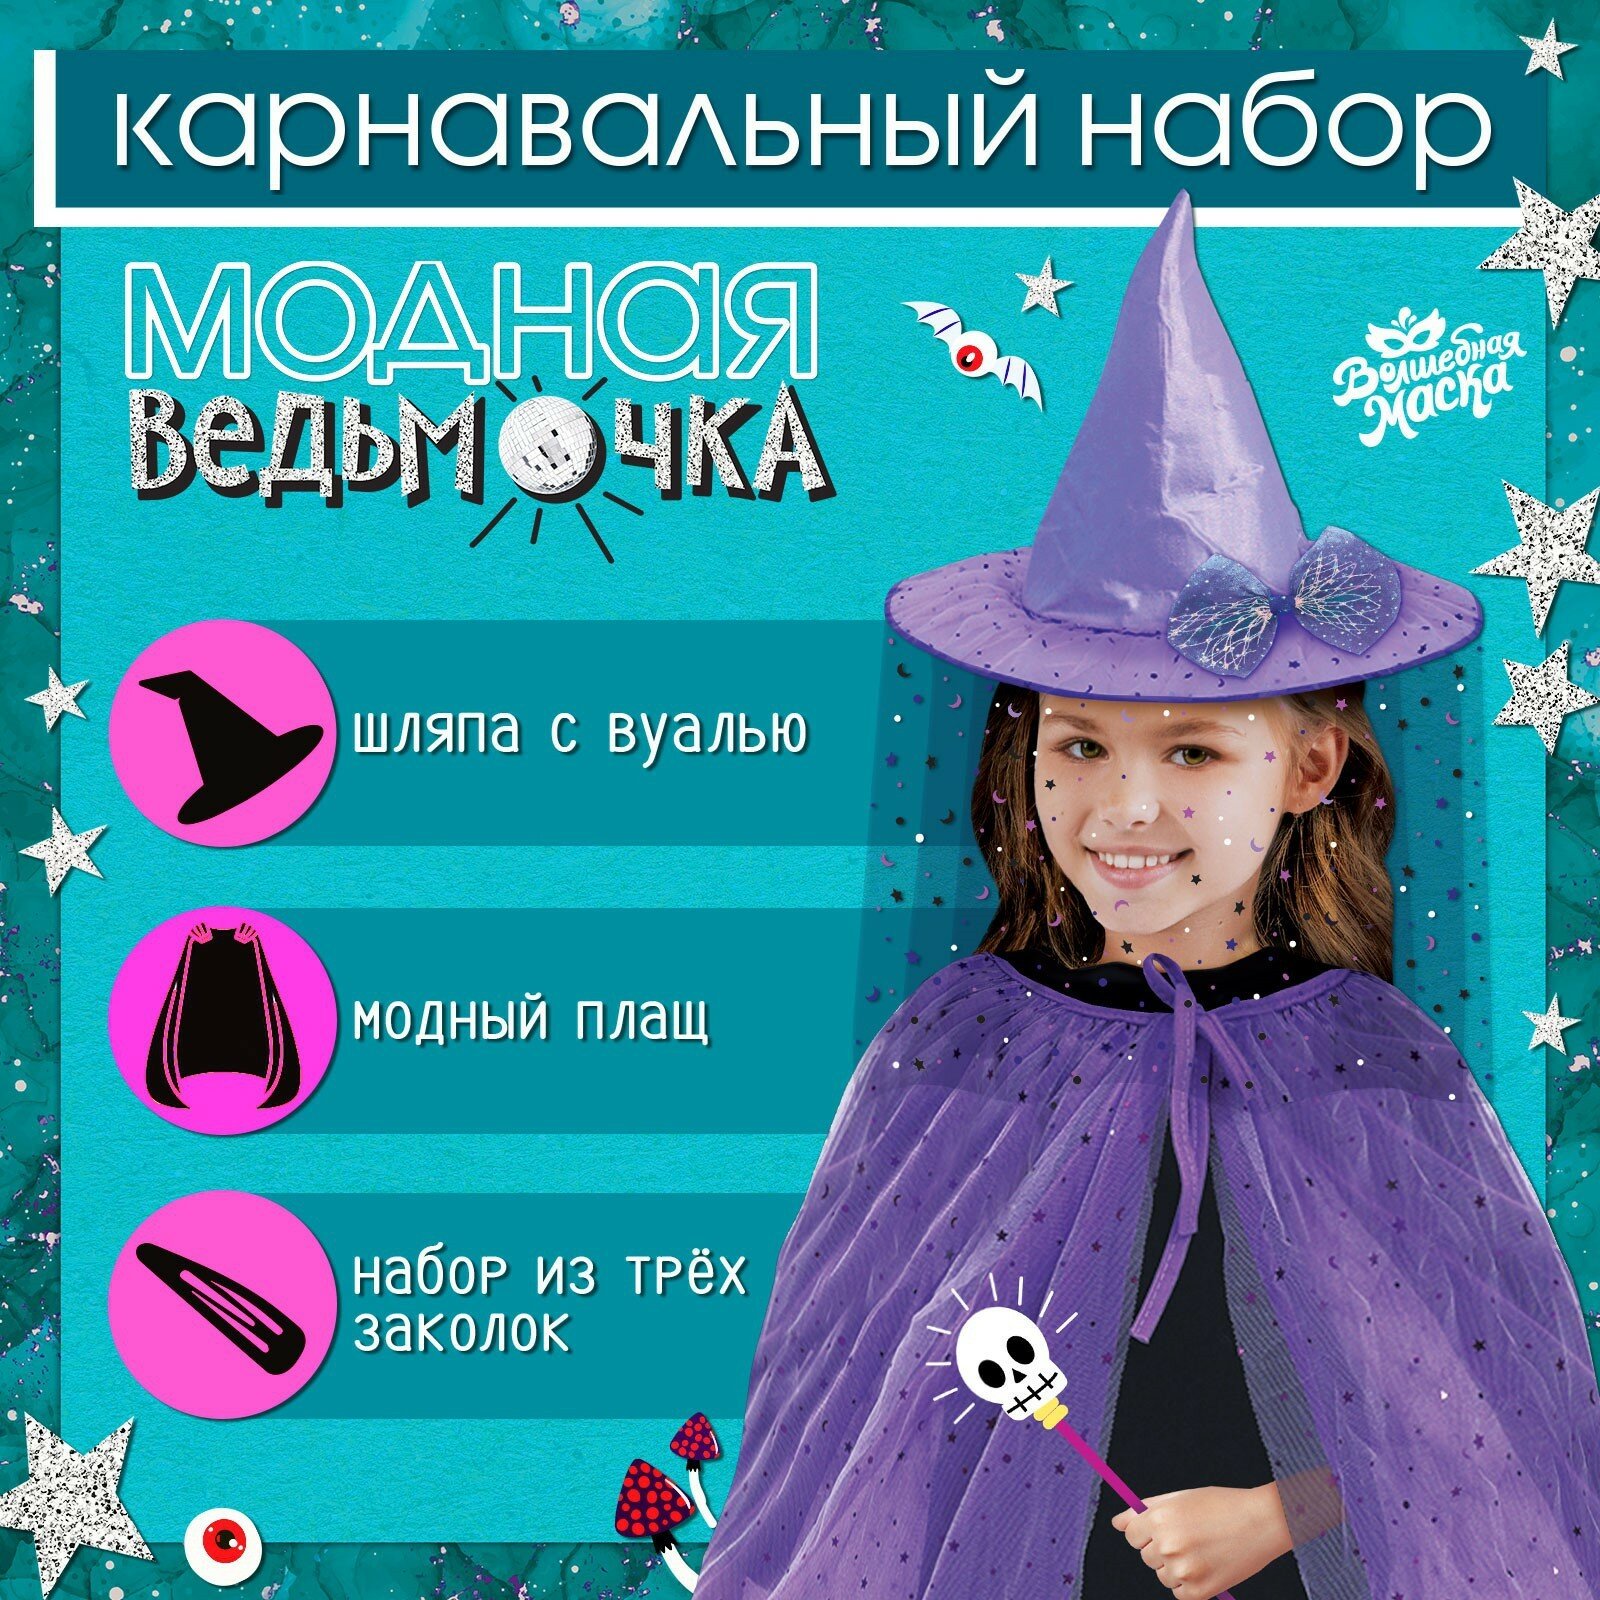 Карнавальный набор "Модная ведьмочка": шляпа, плащ, заколки 3 шт.